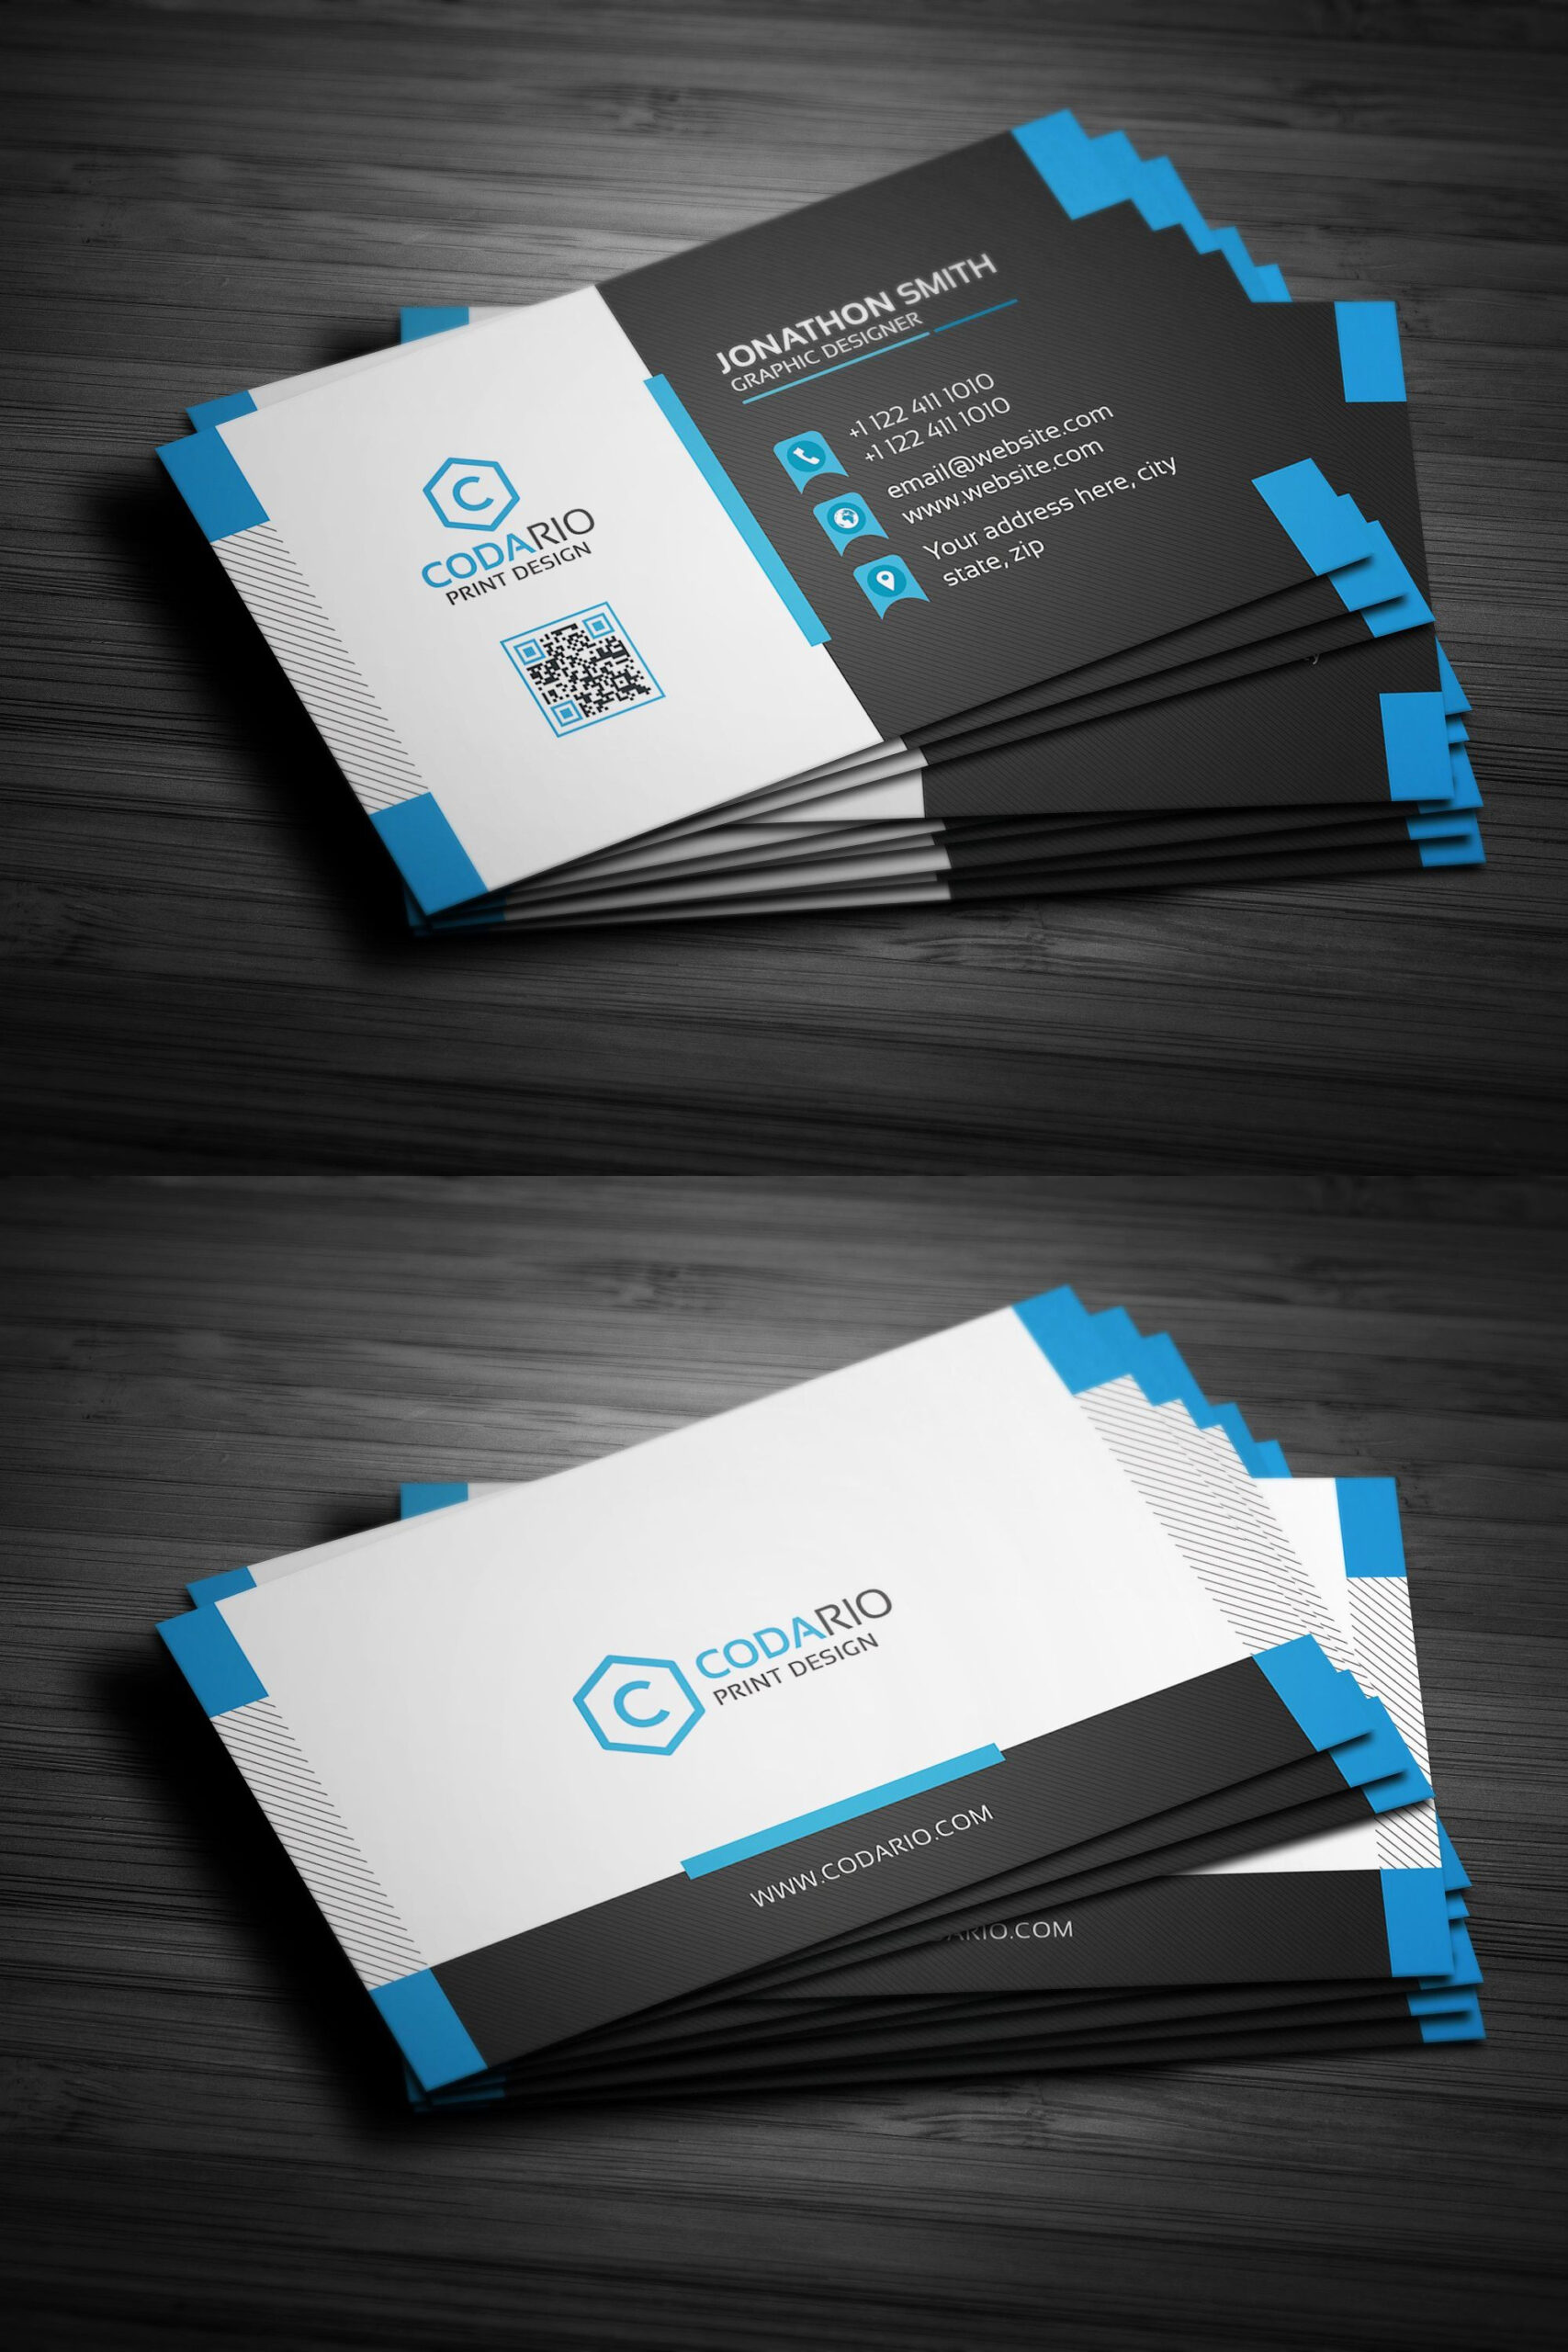 Modern Creative Business Card Template Psd | Create Business With Create Business Card Template Photoshop